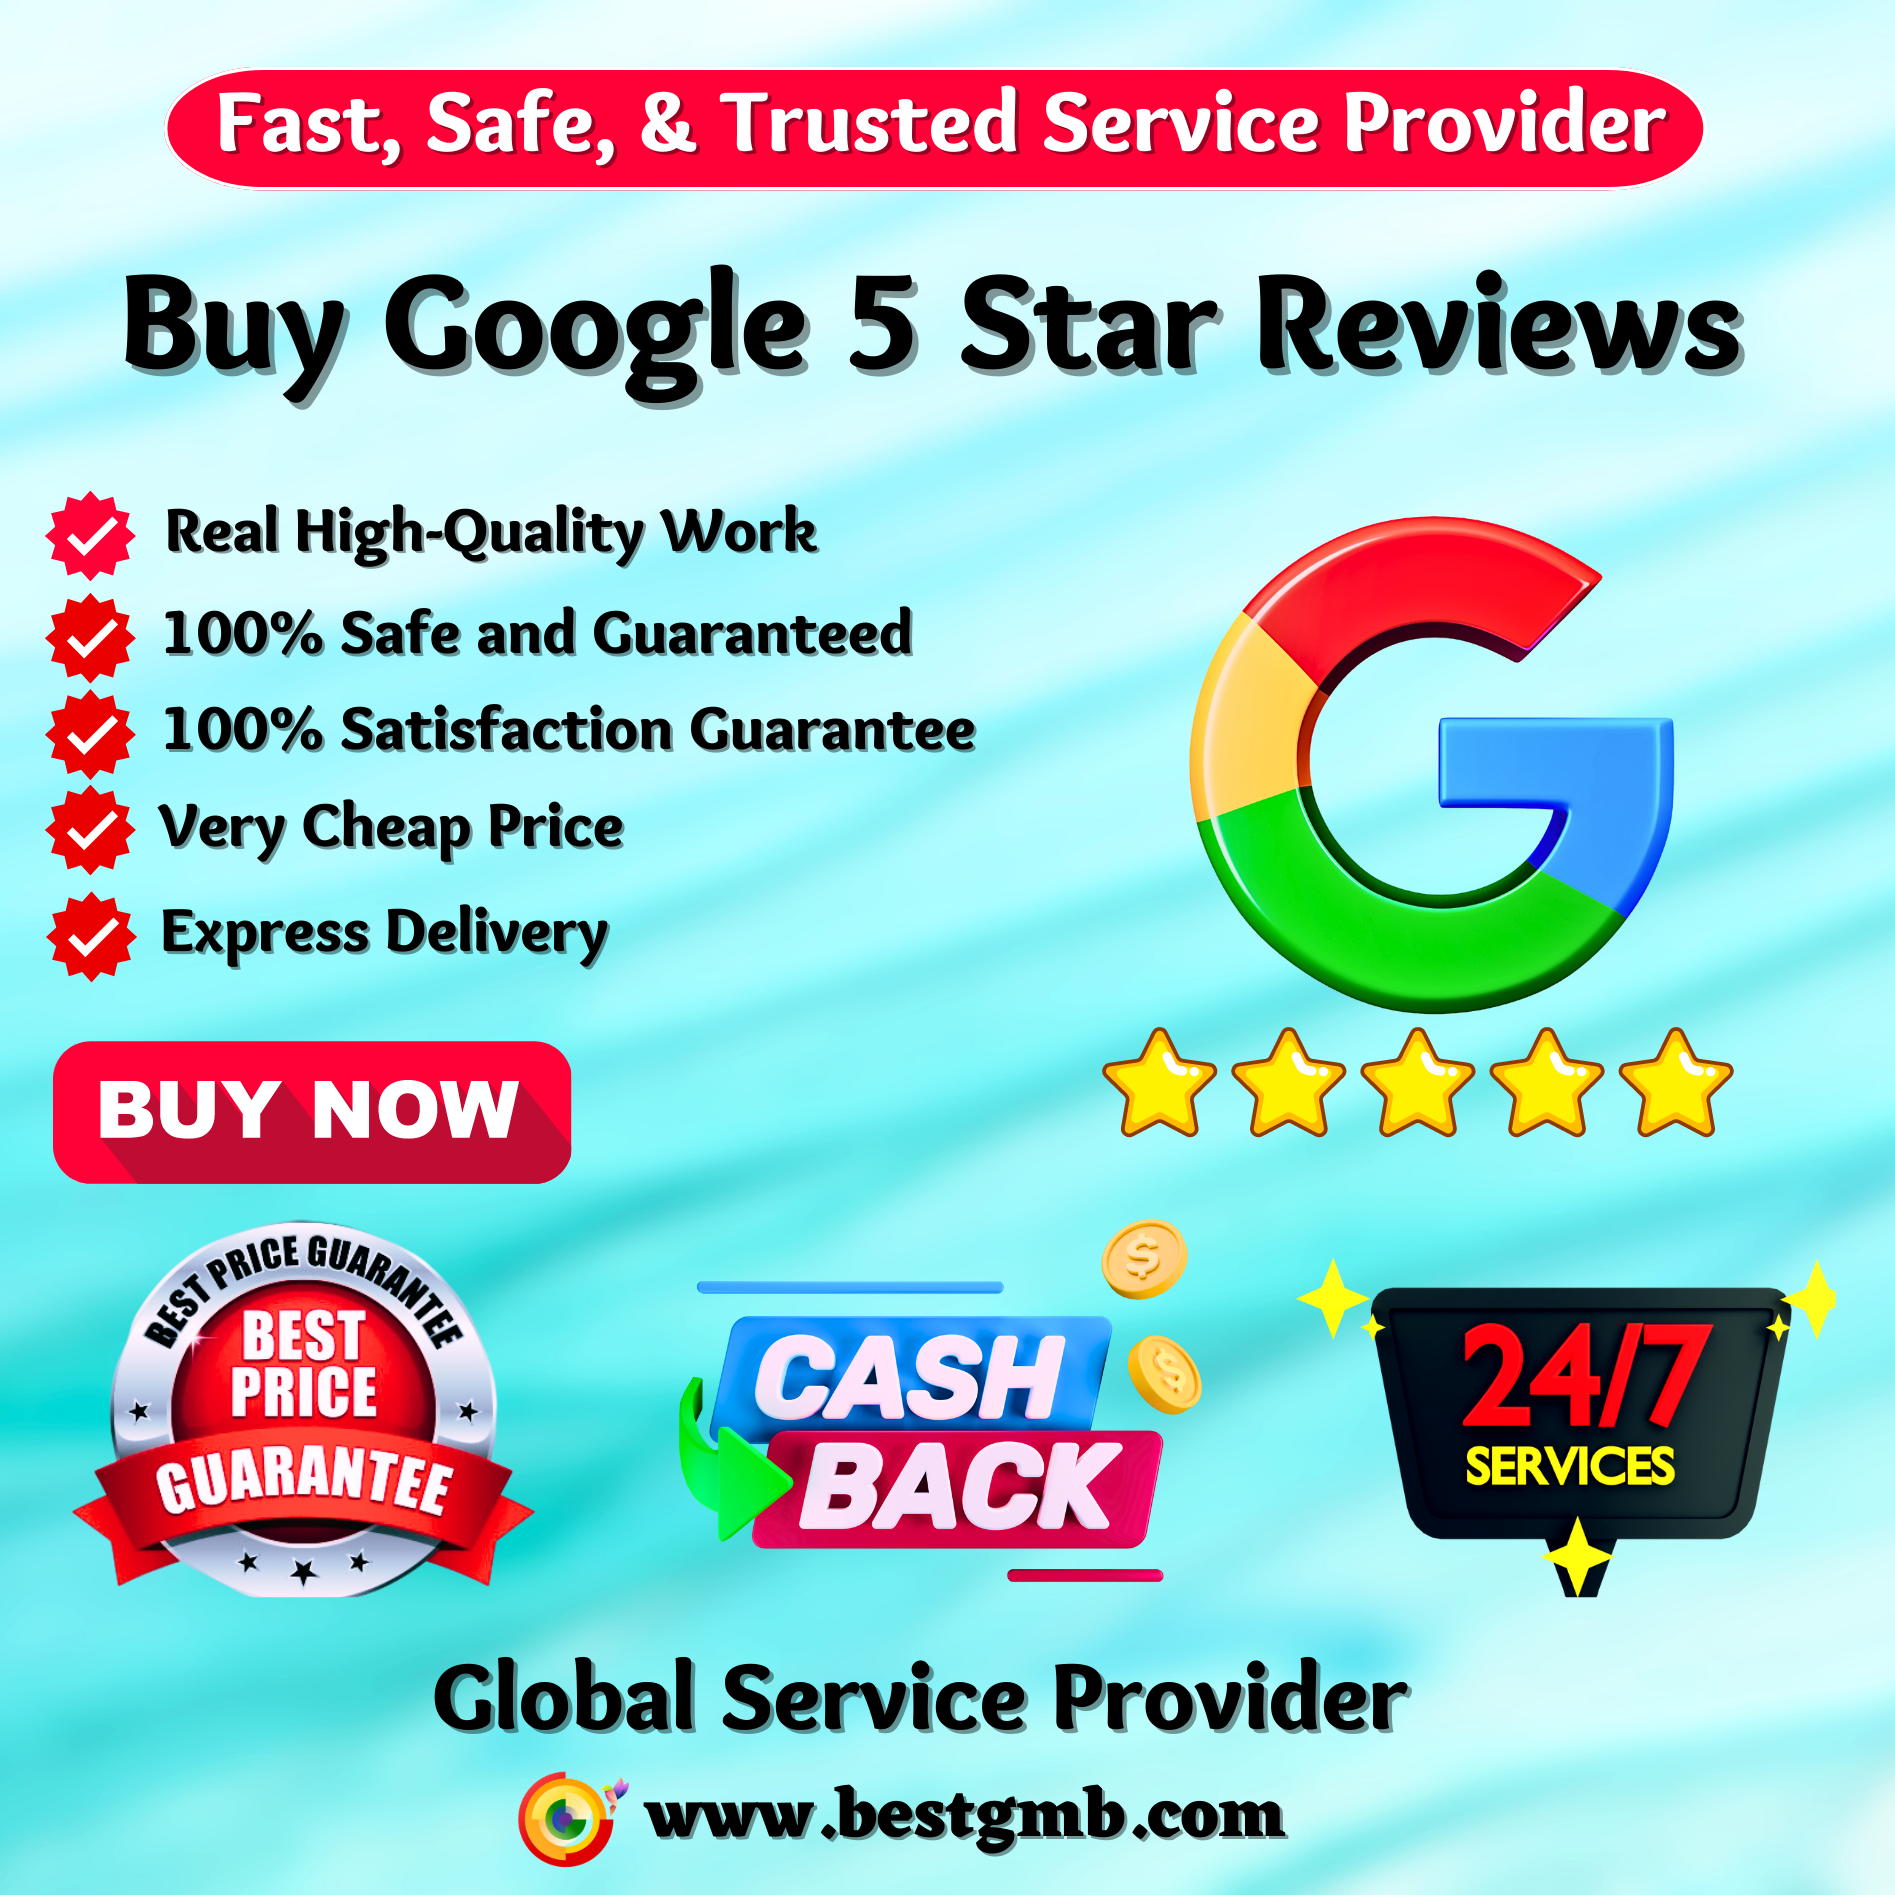 Buy Google 5 Star Reviews - 100% Safe, Permanent, Cheap, Guaranteed